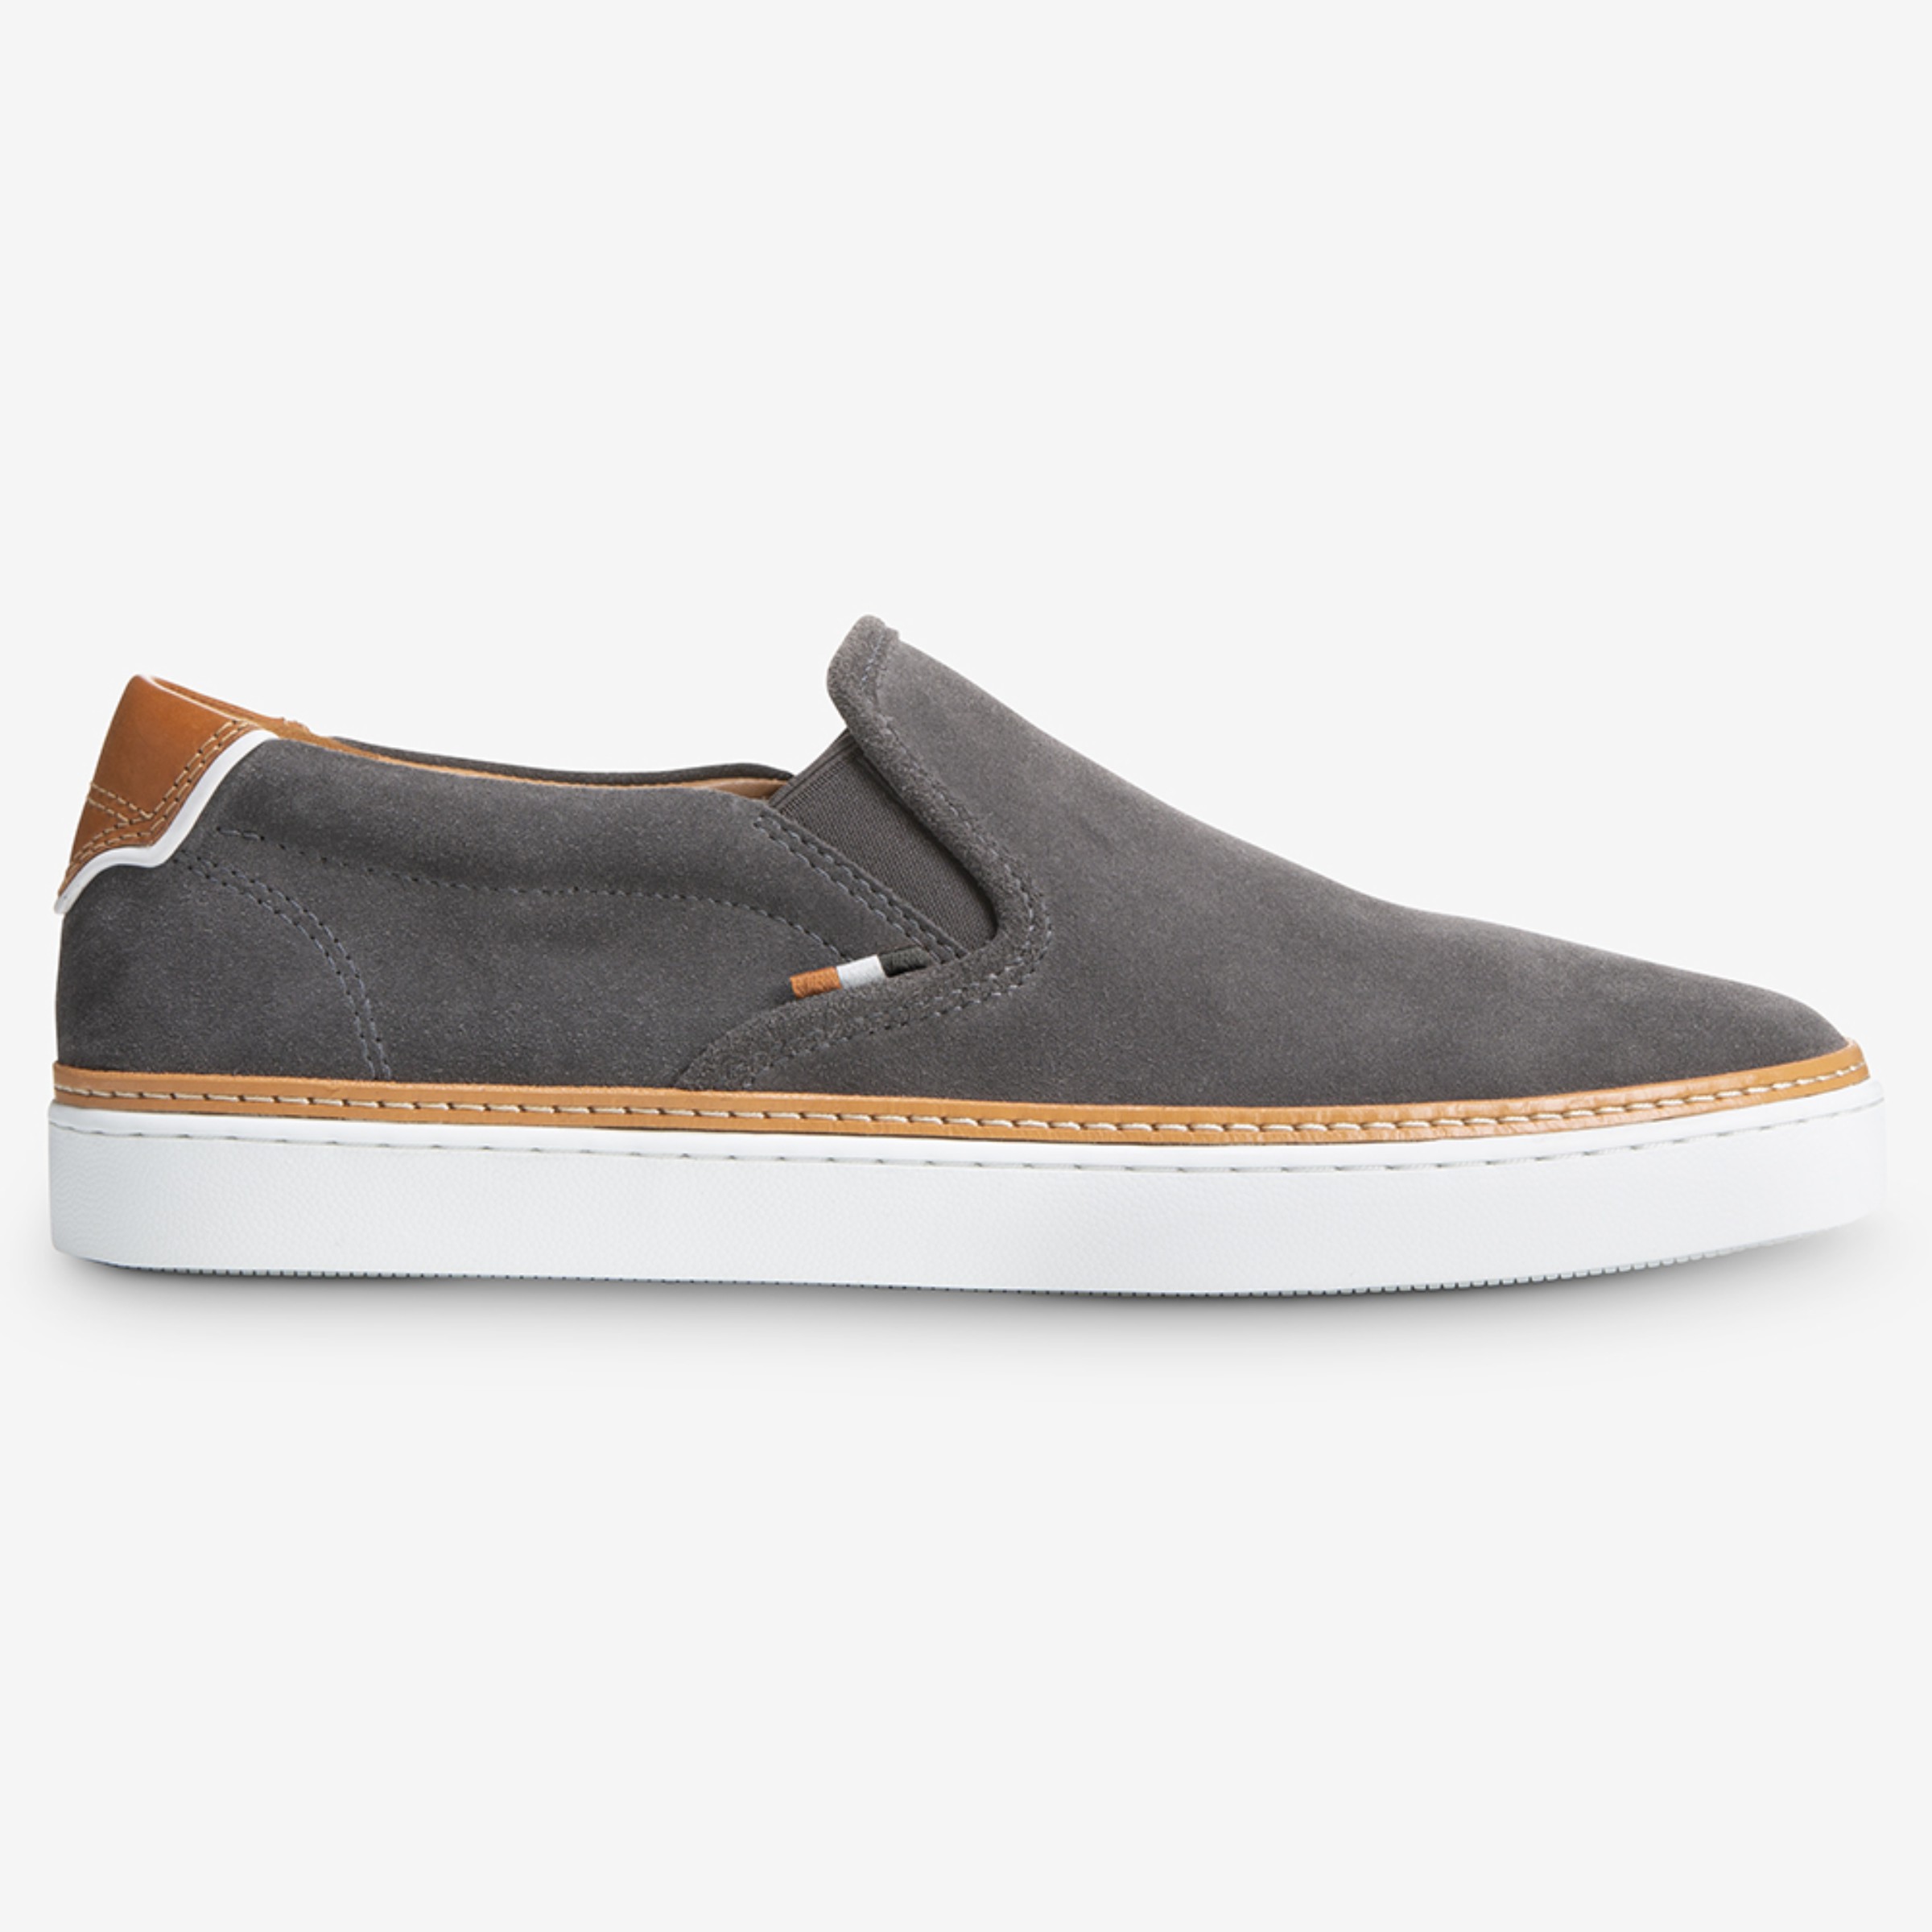 Allen Edmonds Men's Alpha Woven Slip-On Sneaker in Pewter Grey Suede, Size 11.0 E